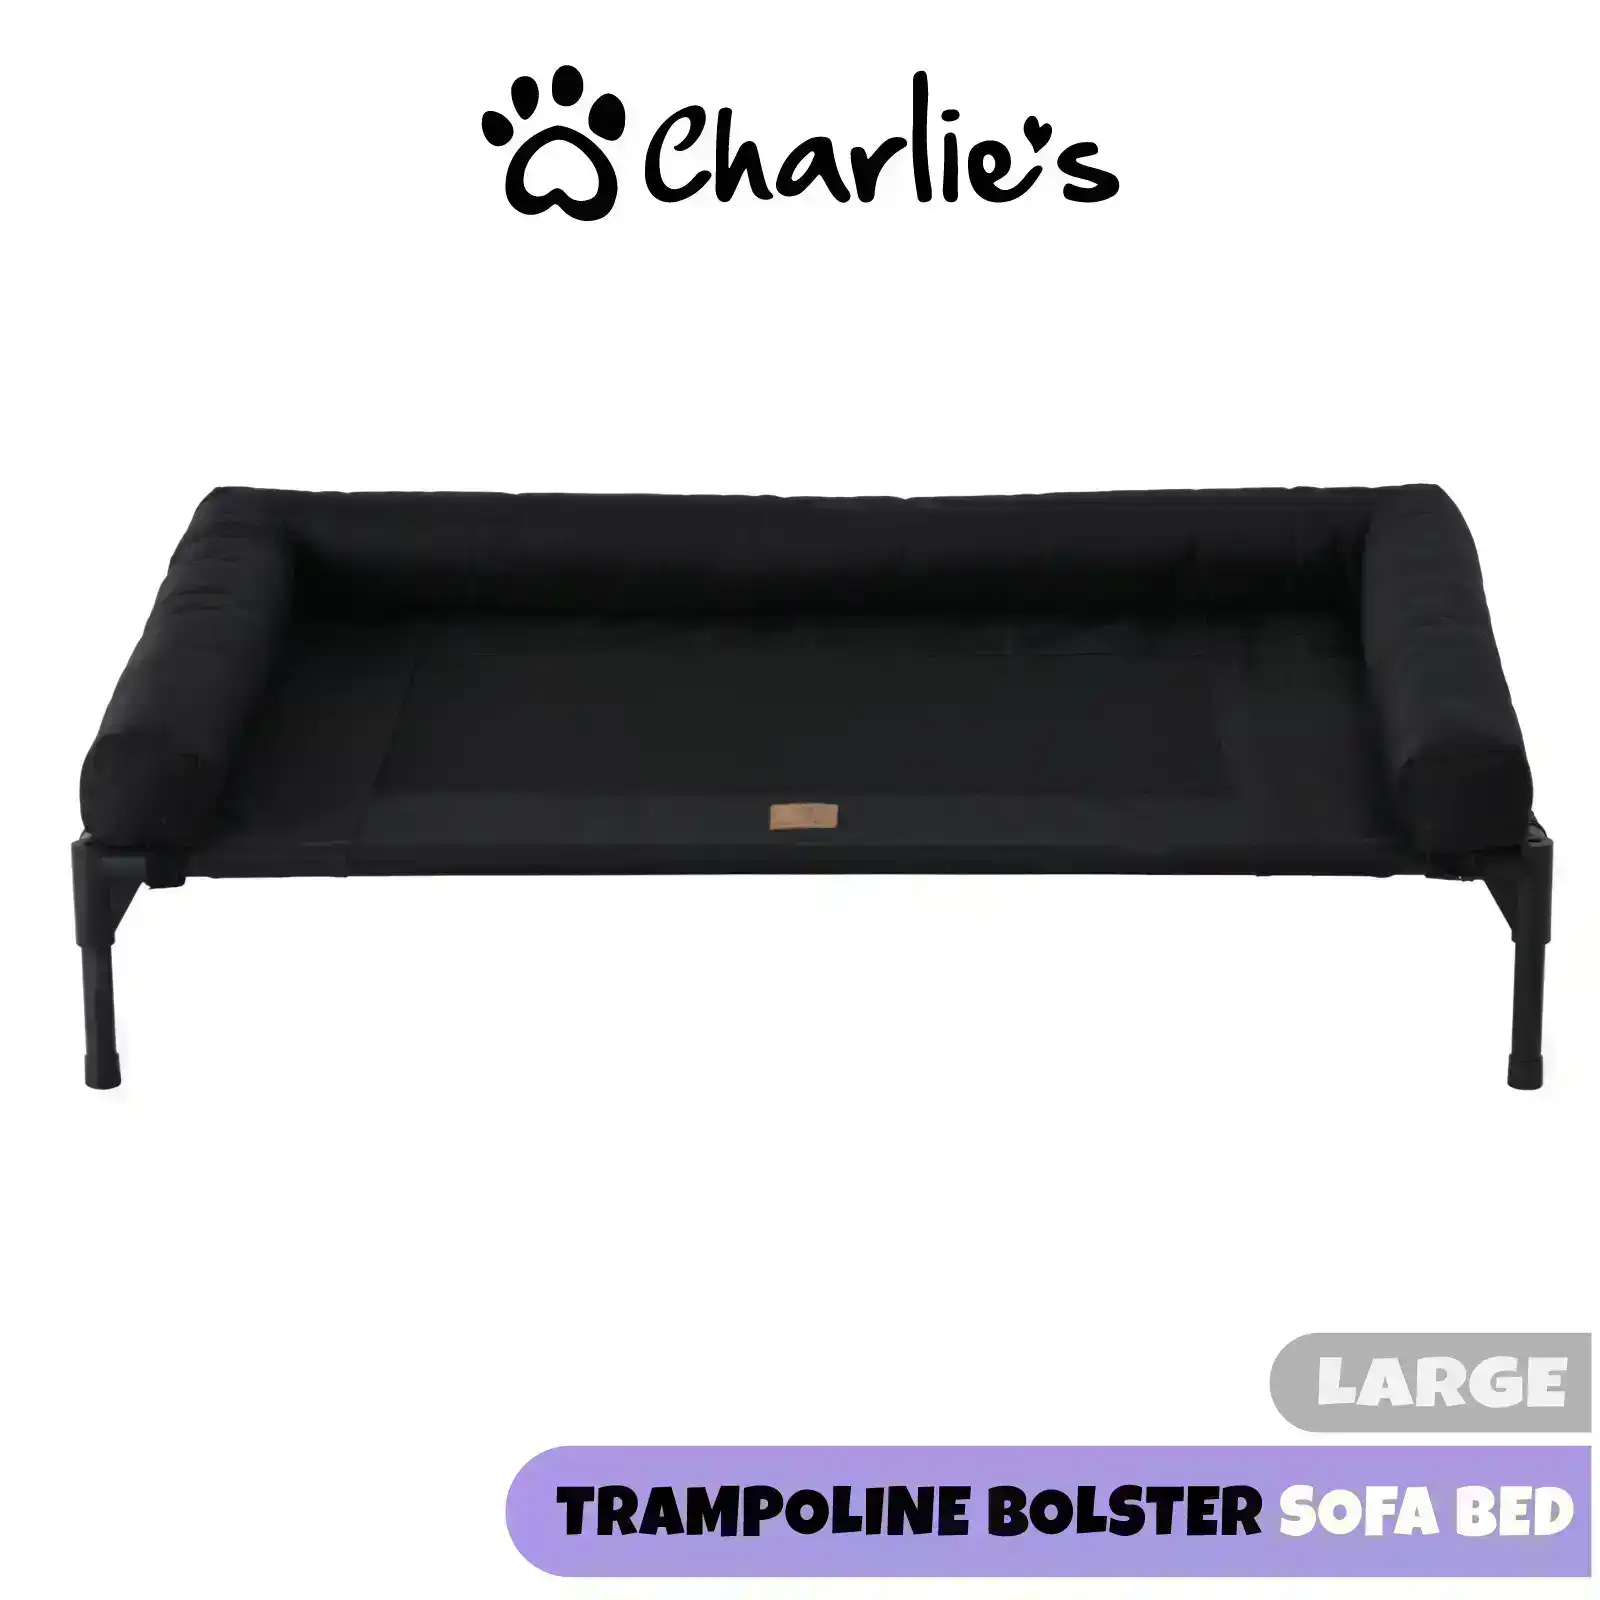 Charlie's Elevated Trampoline Bolster Sofa Dog Bed Black Large